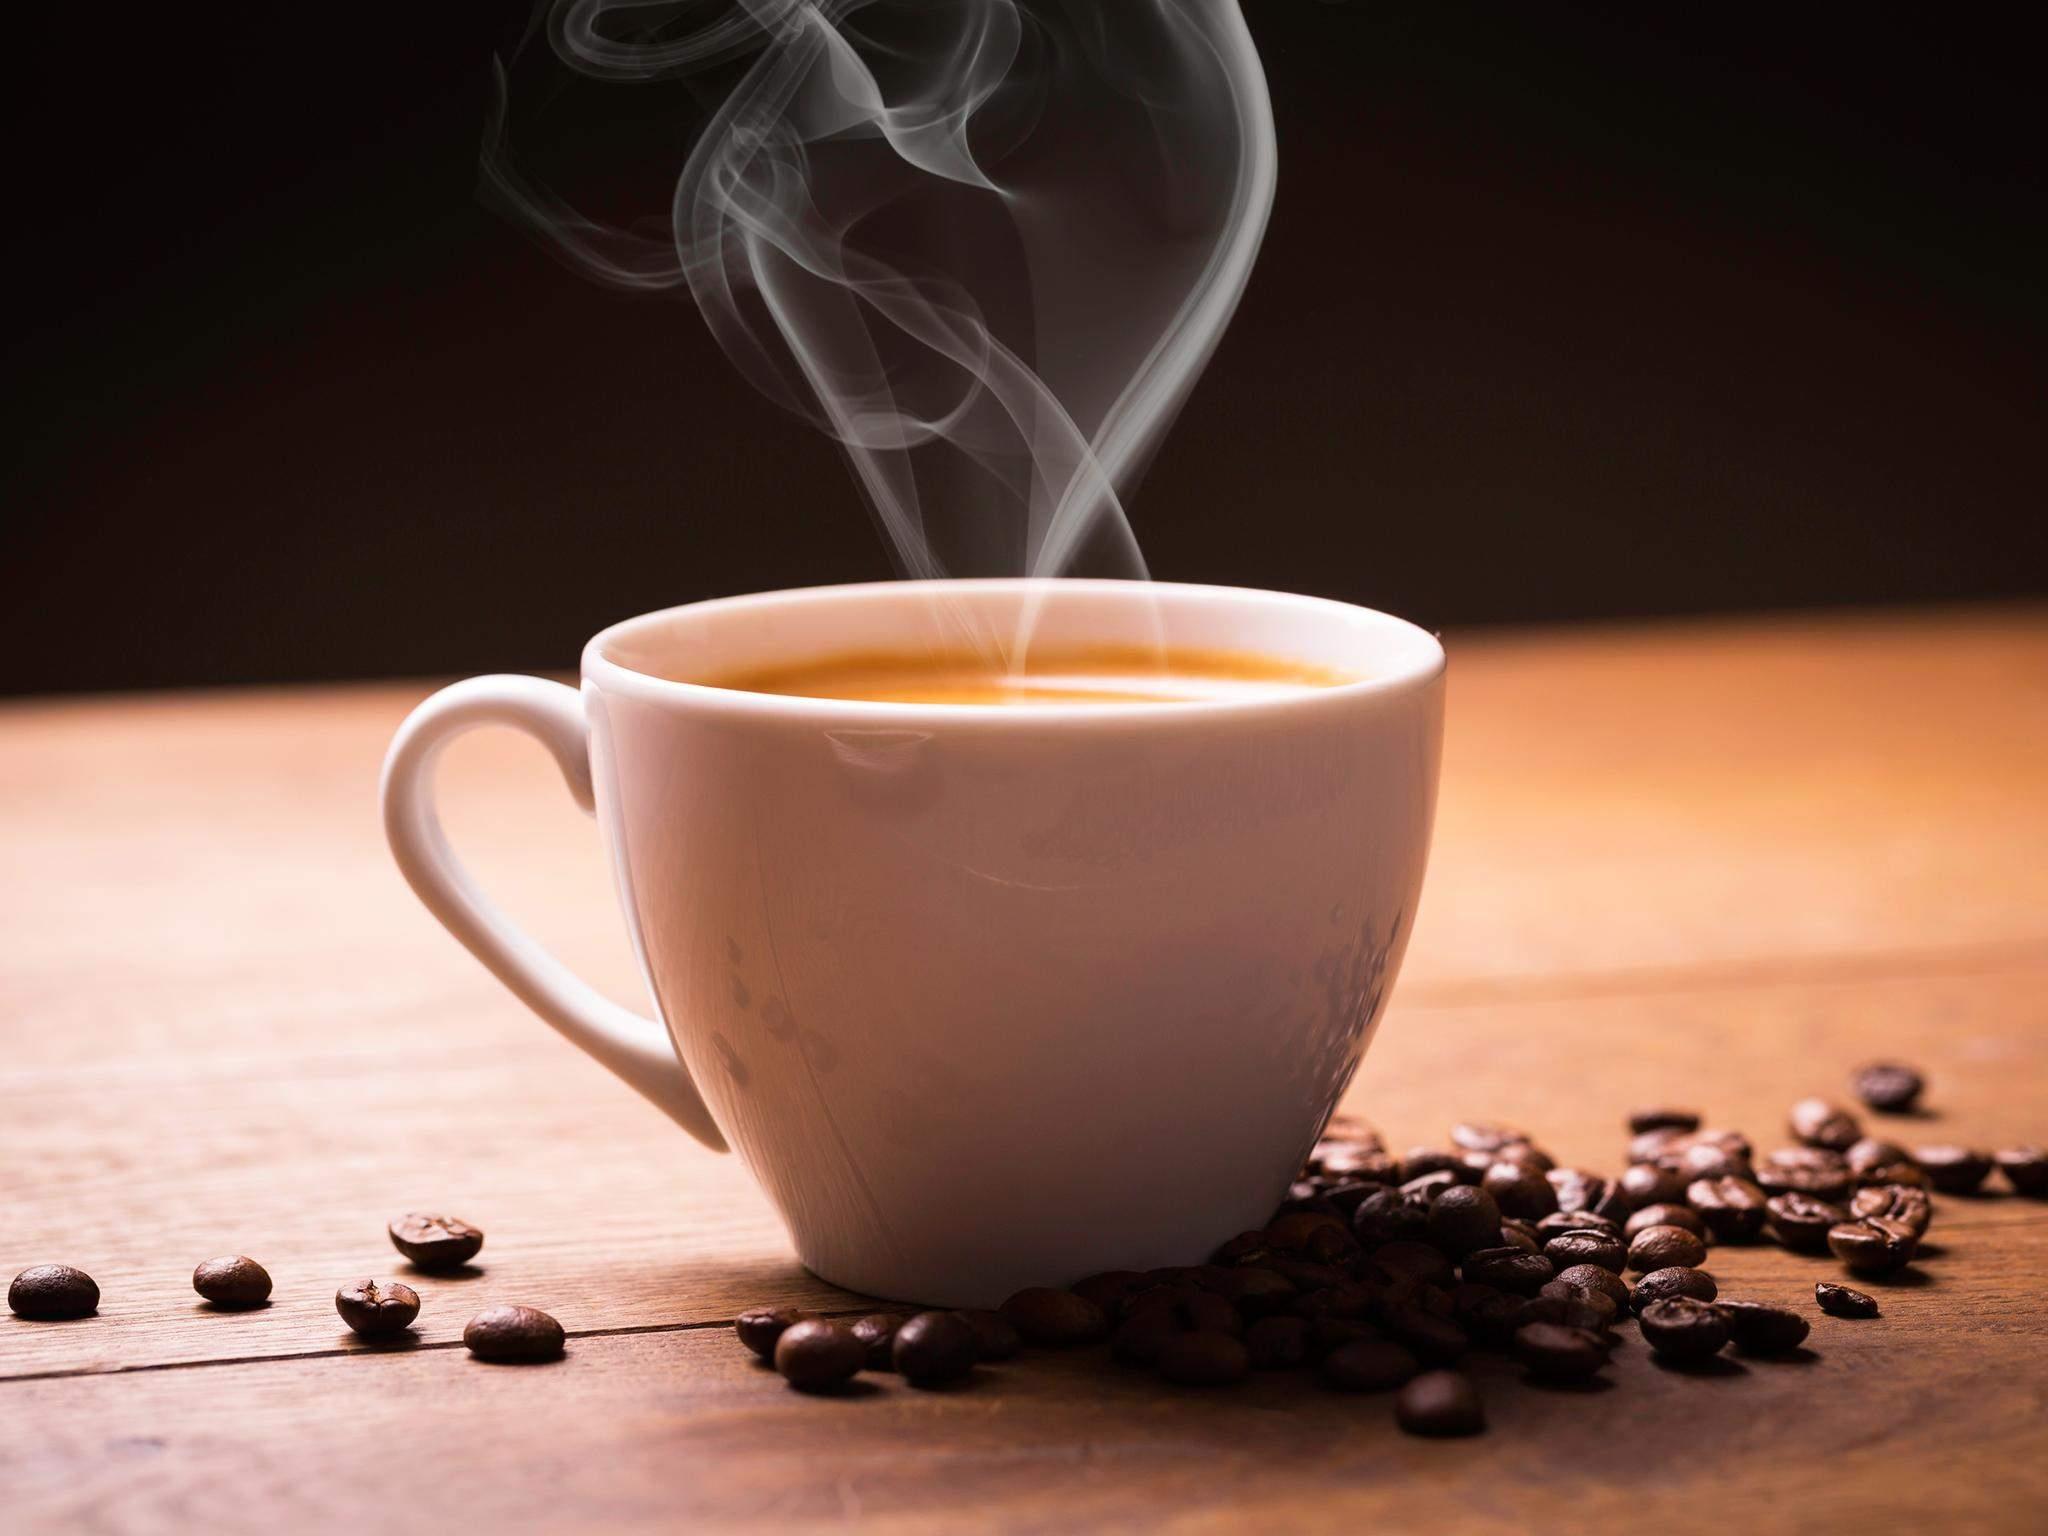  قهوة سوداء أو بالحليب؟ خبراء الصحة يحددون "الأفضل